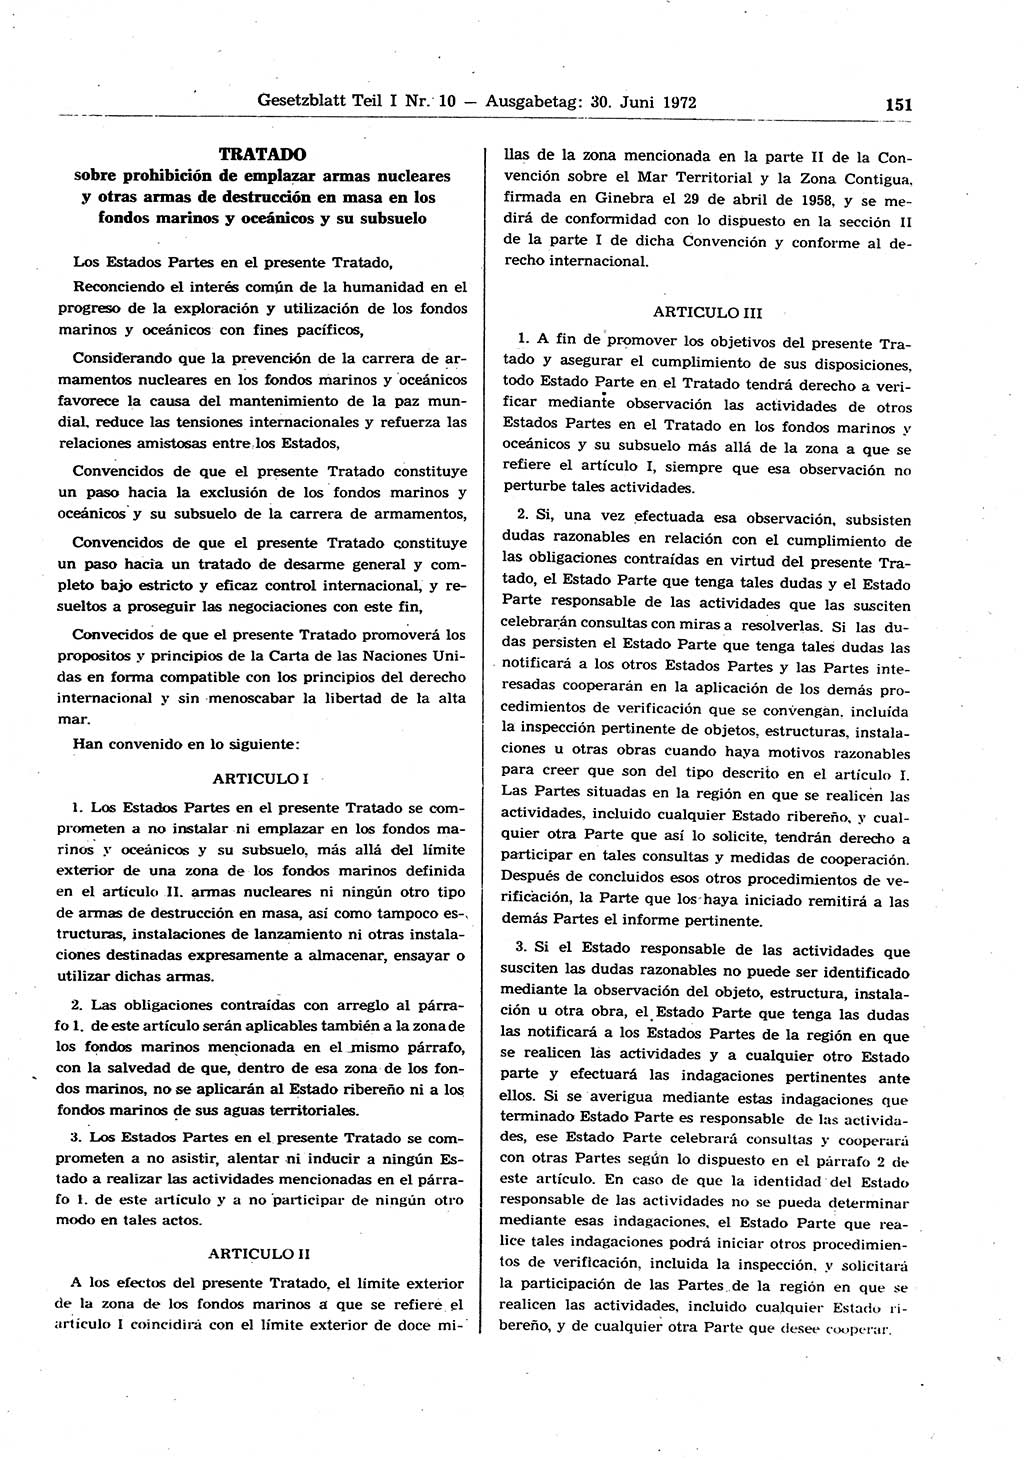 Gesetzblatt (GBl.) der Deutschen Demokratischen Republik (DDR) Teil Ⅰ 1972, Seite 151 (GBl. DDR Ⅰ 1972, S. 151)